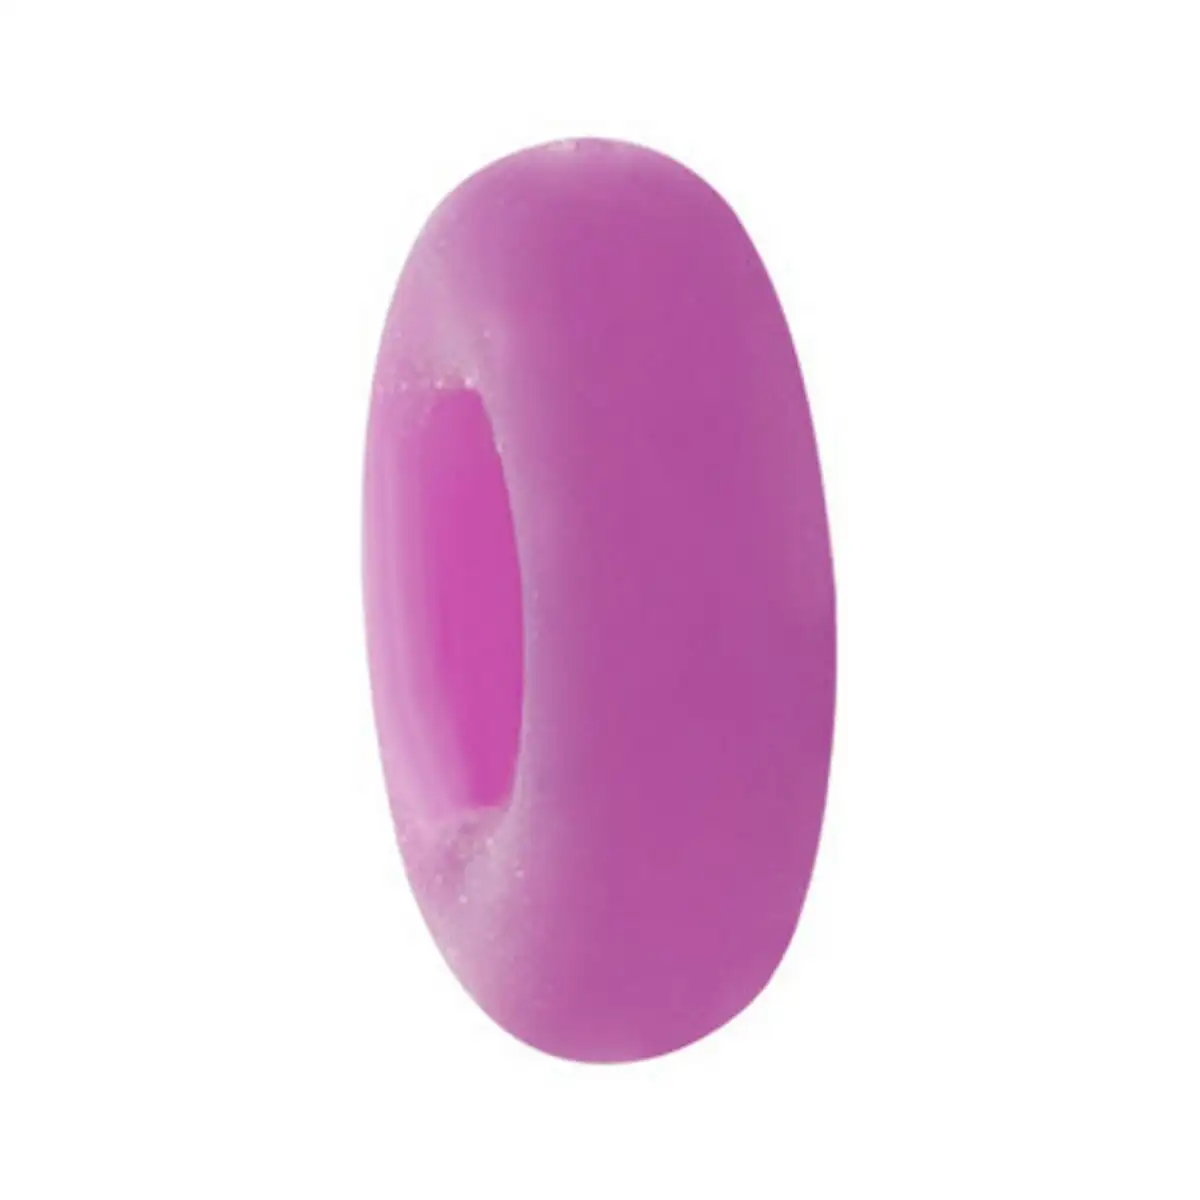 Perles femme morellato sabz105 violet 1 cm_8855. DIAYTAR SENEGAL - Où Choisir Devient une Découverte. Explorez notre boutique en ligne et trouvez des articles qui vous surprennent et vous ravissent à chaque clic.